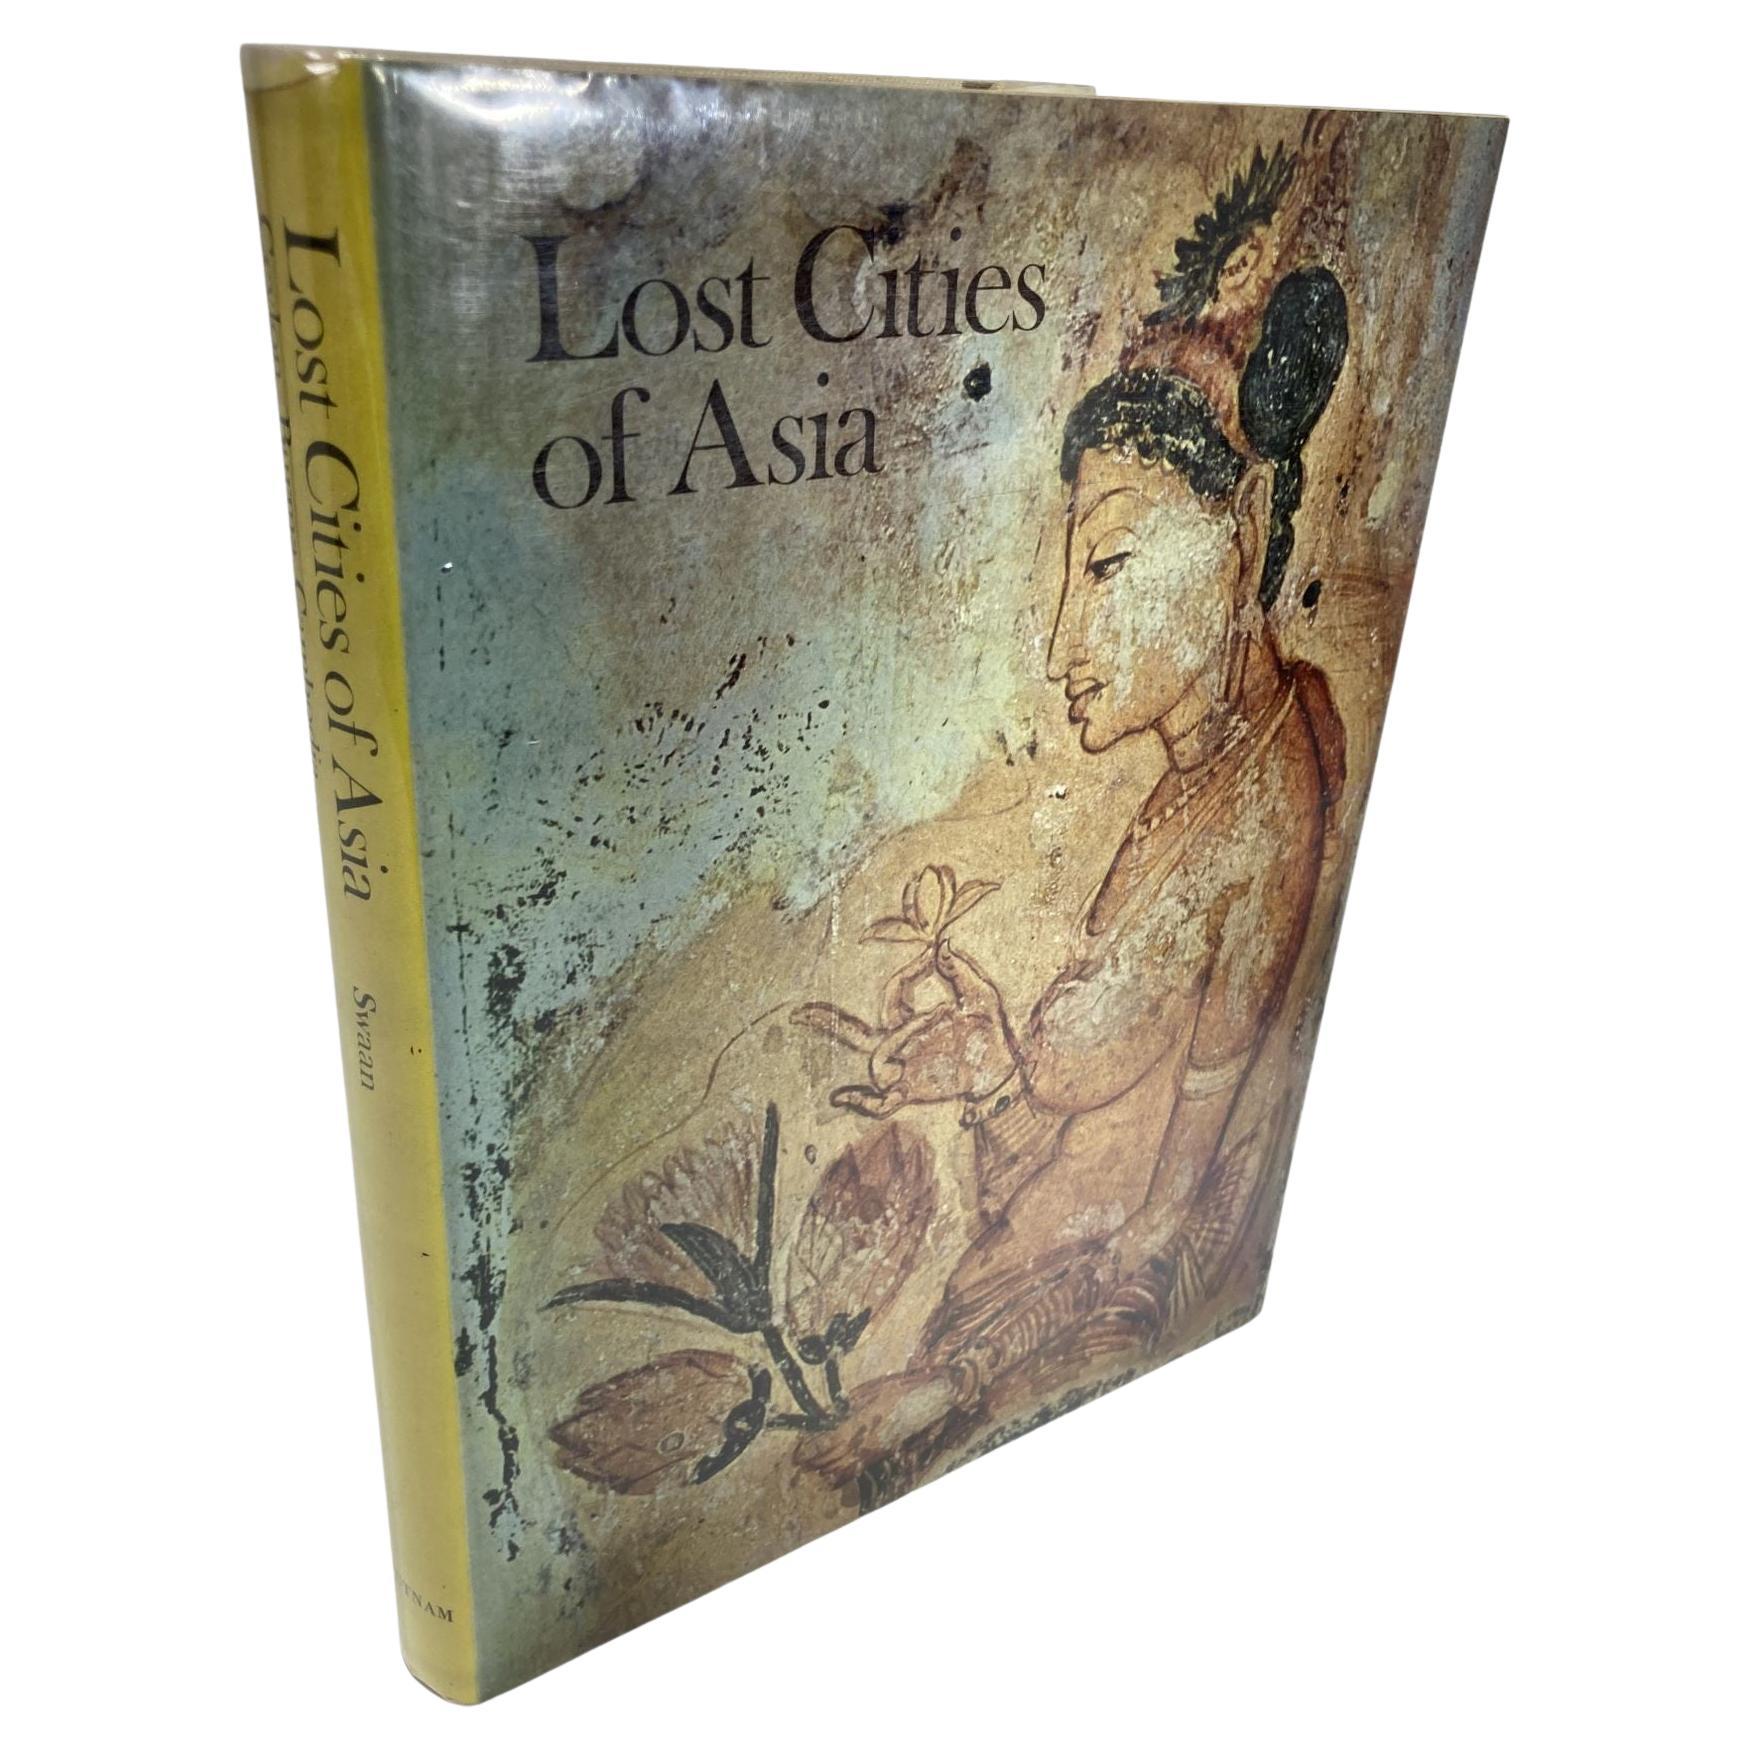 Livre Lost Cities of Asia (Les villes perdues d'Asie) - 1ère édition reliée 1966 par Wim Swaan